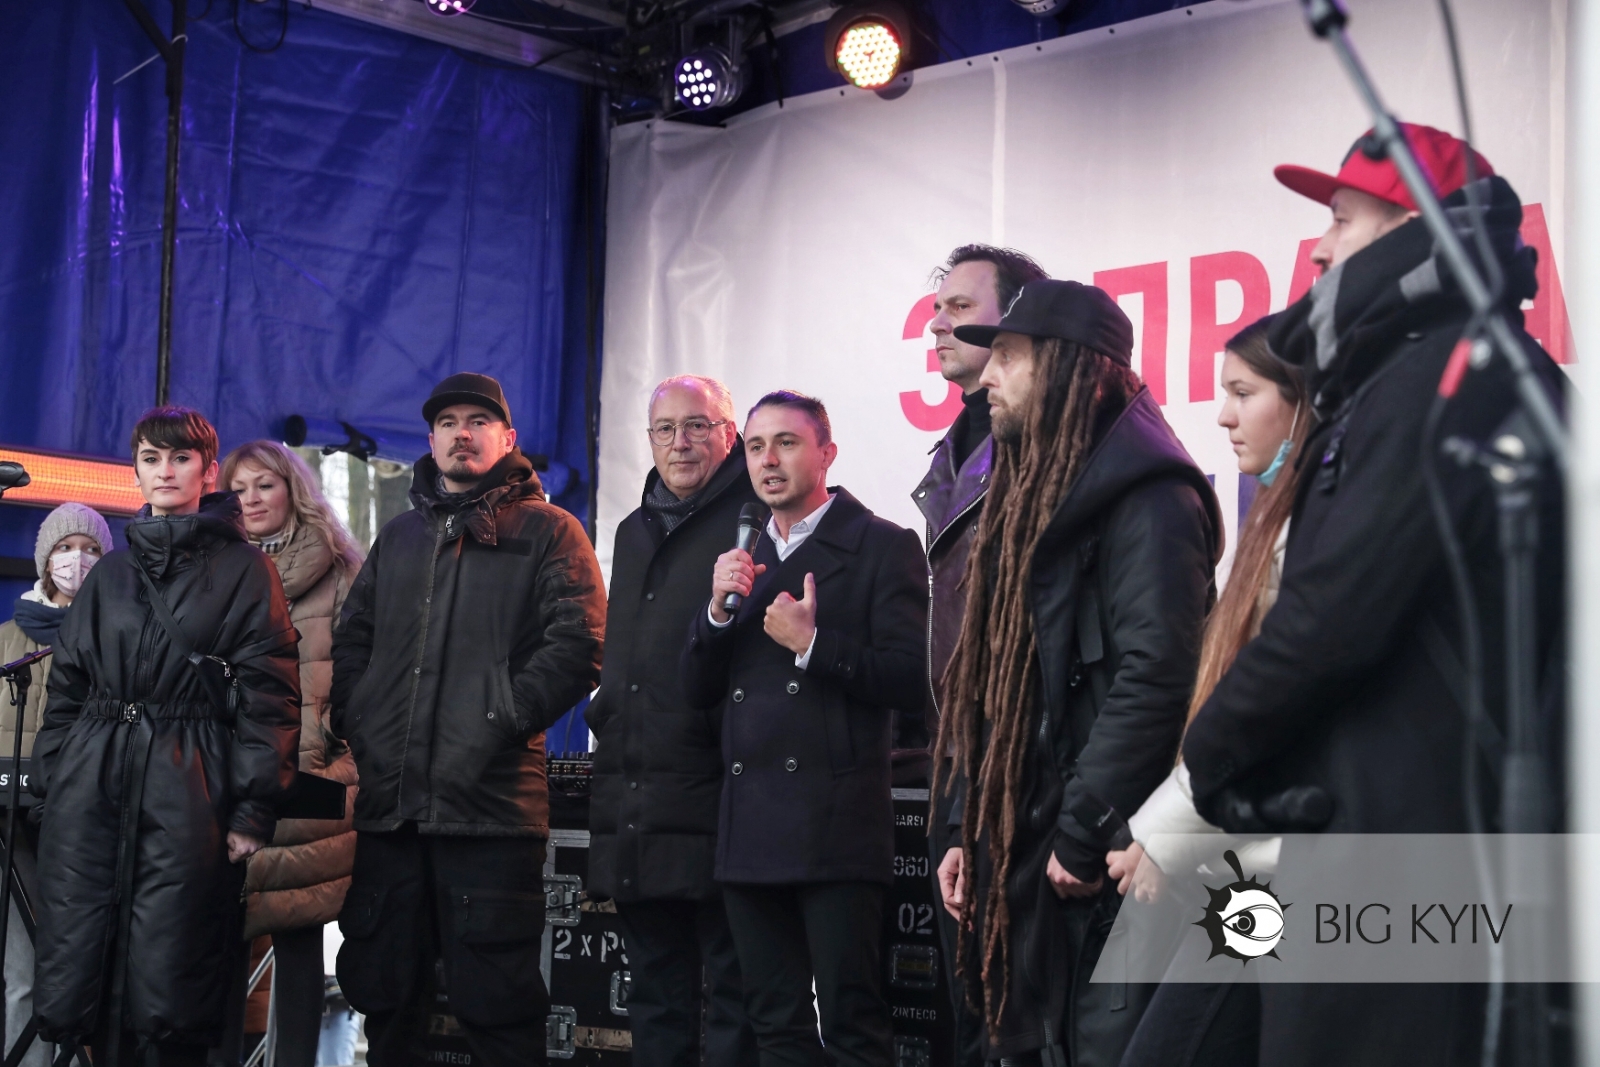 Возле Верховной Рады артисты устроили концерт-митинг. Фото: Big Kyiv